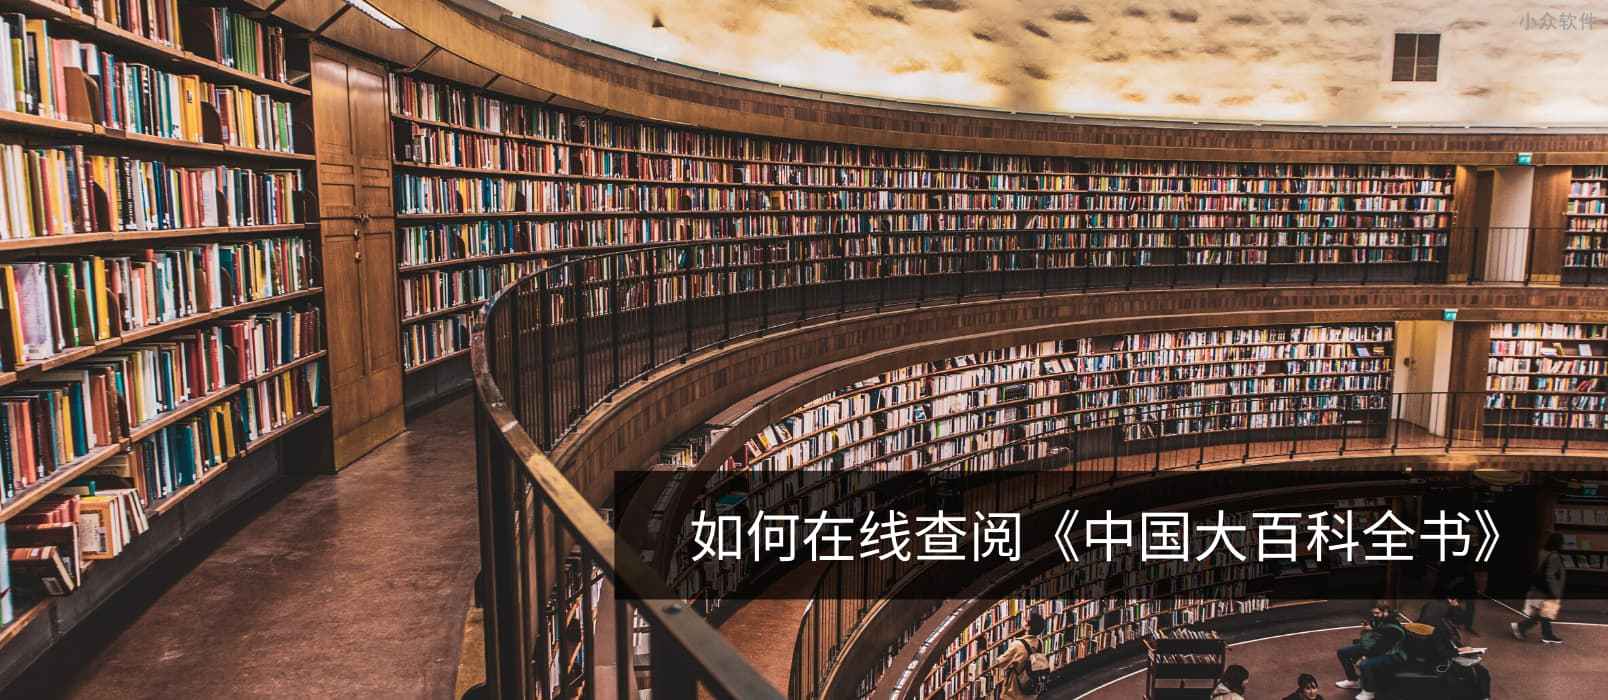 如何免费在线查阅《中国大百科全书》